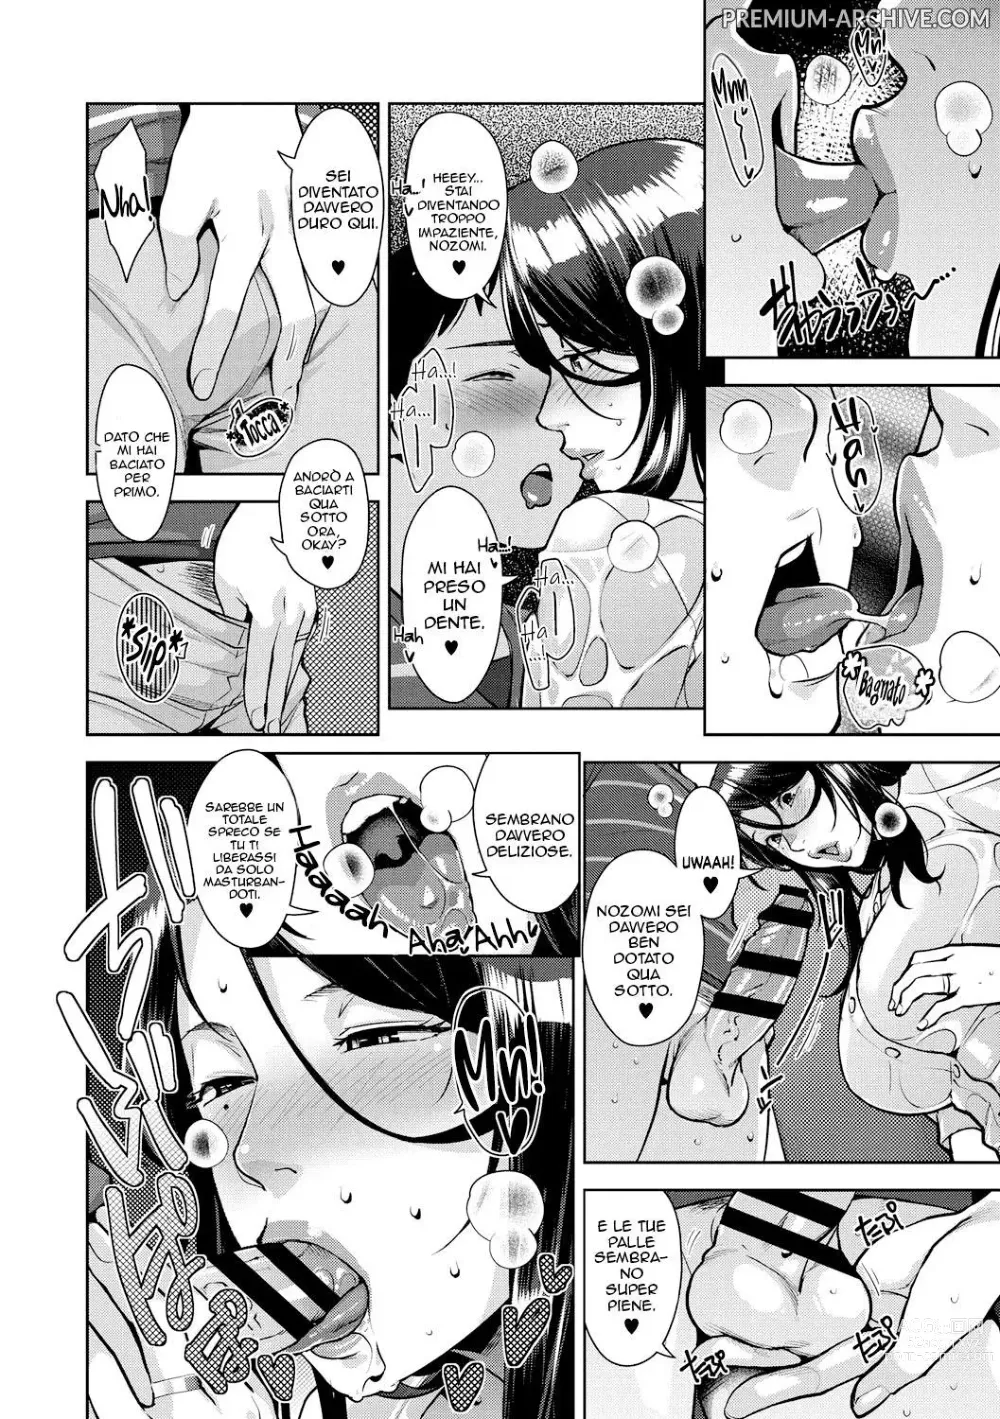 Page 8 of manga Preso dalla Pioggia